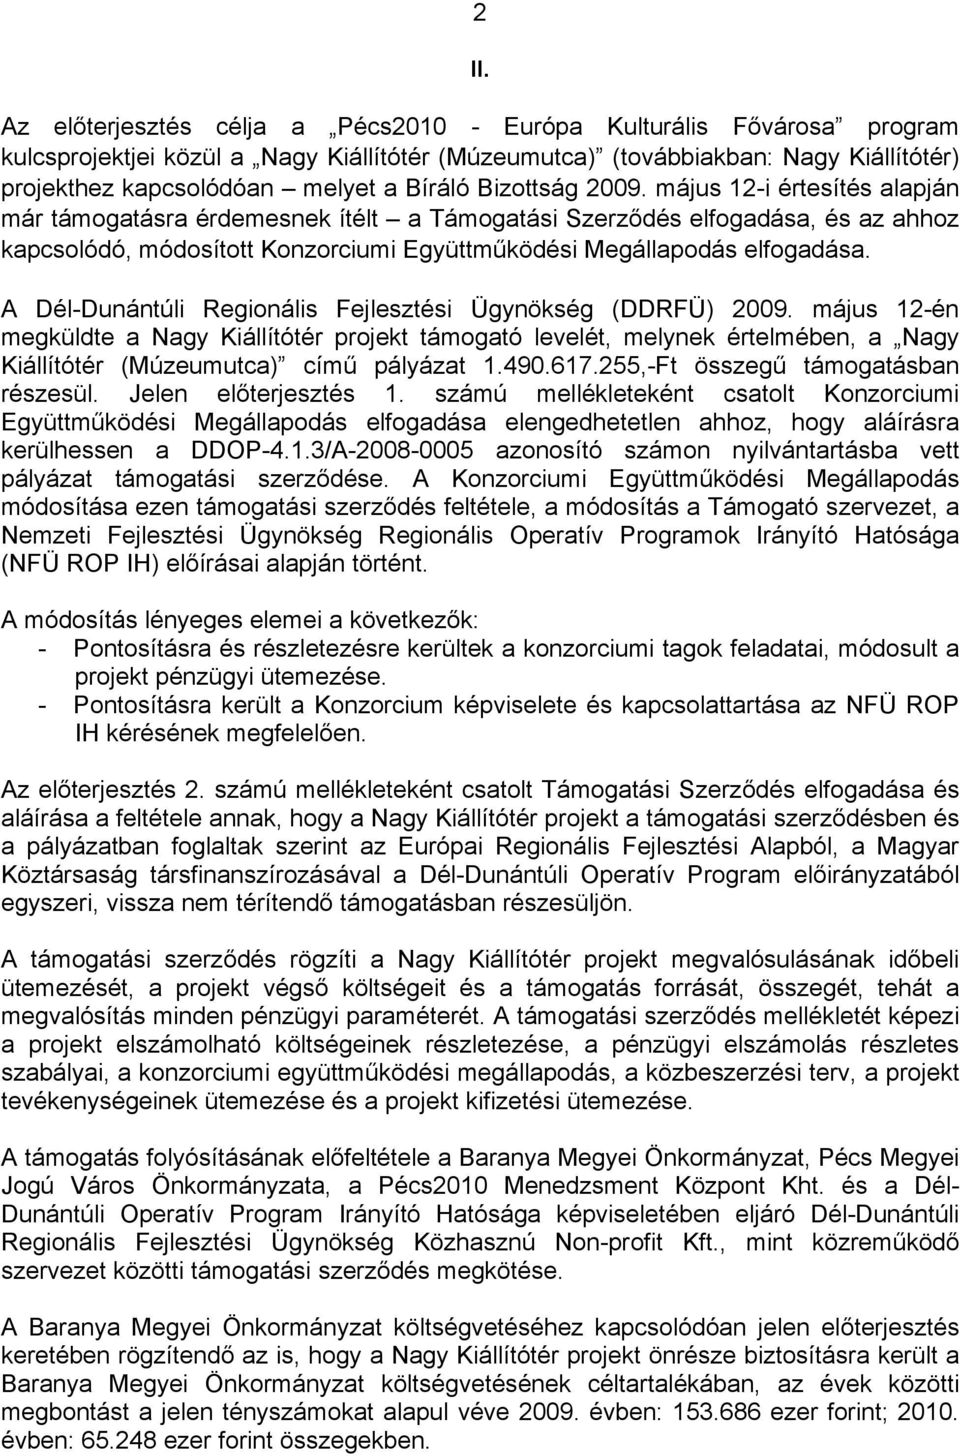 A Dél-Dunántúli Fejlesztési Ügynökség (DDRFÜ) 29. május 12-én megküldte a Nagy Kiállítótér projekt támogató levelét, melynek értelmében, a Nagy Kiállítótér (Múzeumutca) című pályázat 1.49.617.